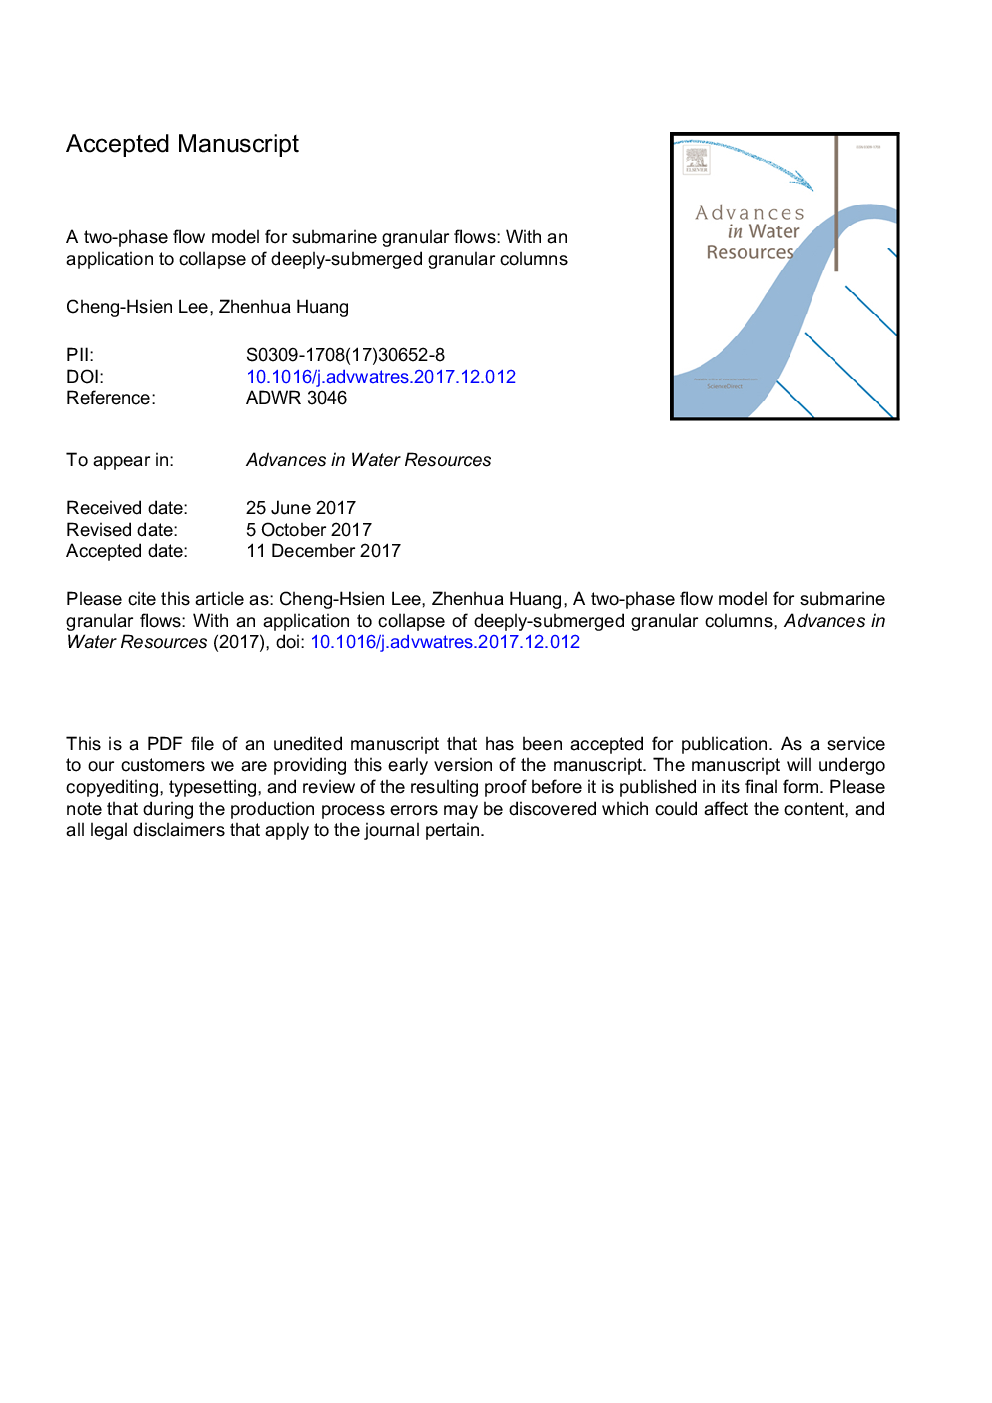 یک مدل جریان دو فازی برای جریان گرانول زیردریایی: با استفاده از نرم افزار برای فروپاشی ستون های گرانول عمیق غوطه 